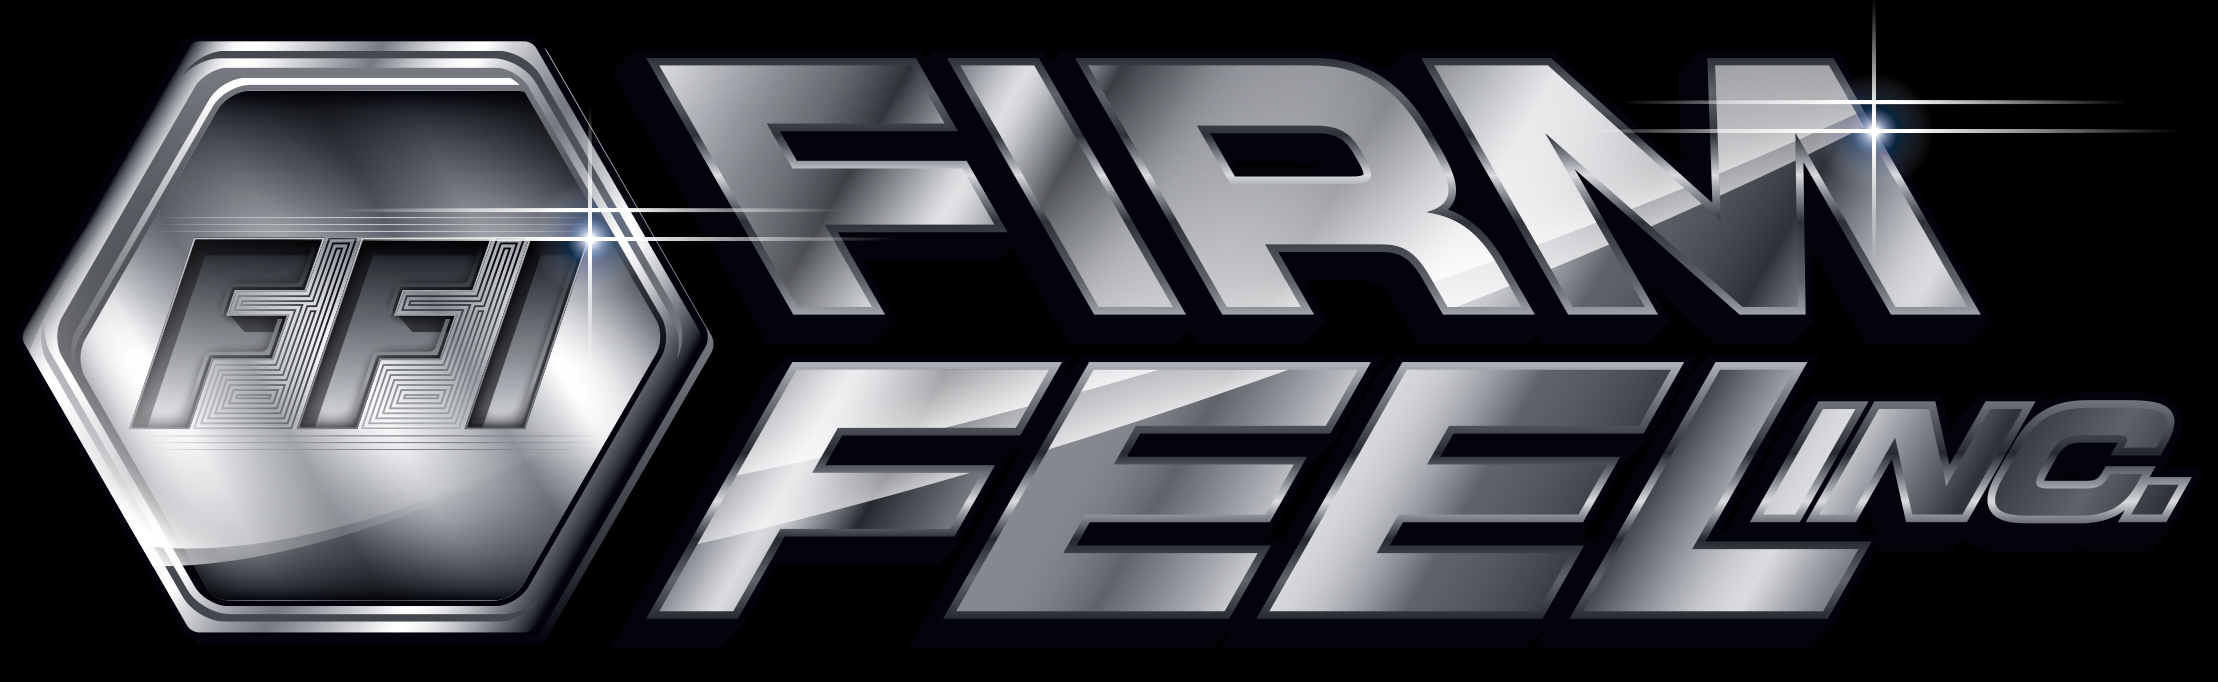 header_ffi_logo_1